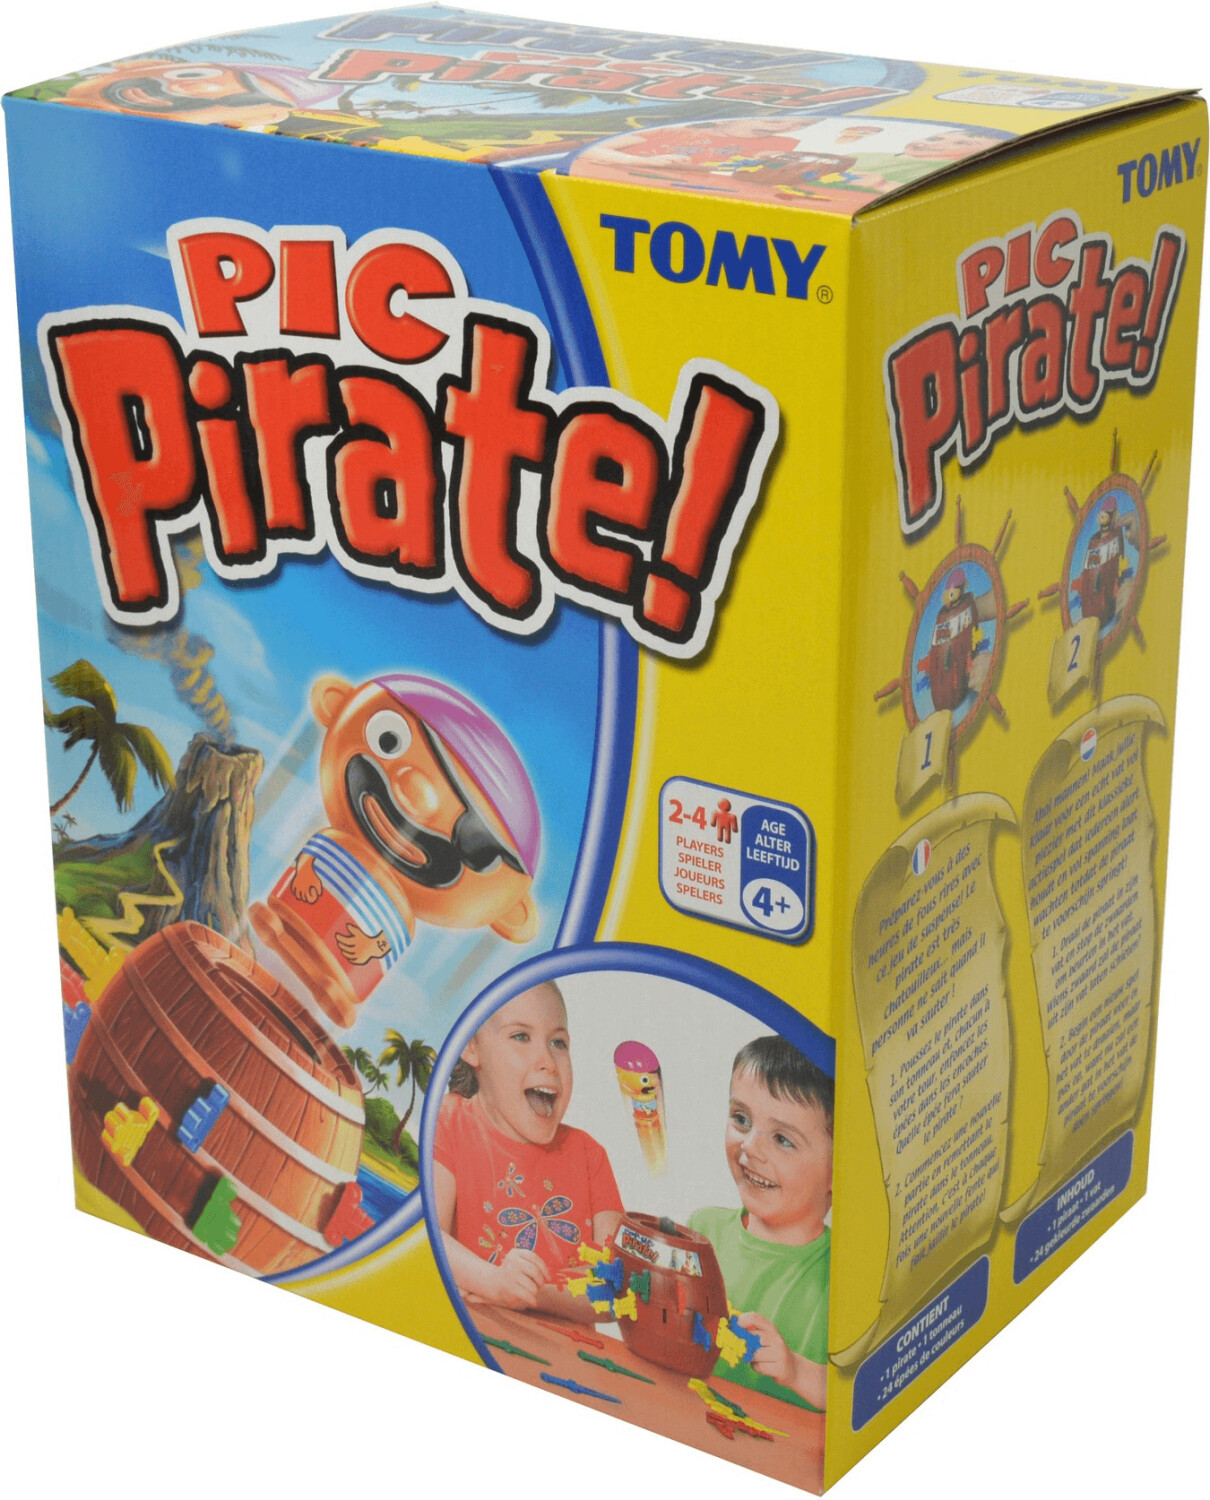 Pic'Pirate Tomy : King Jouet, Jeux d'ambiance Tomy - Jeux de société